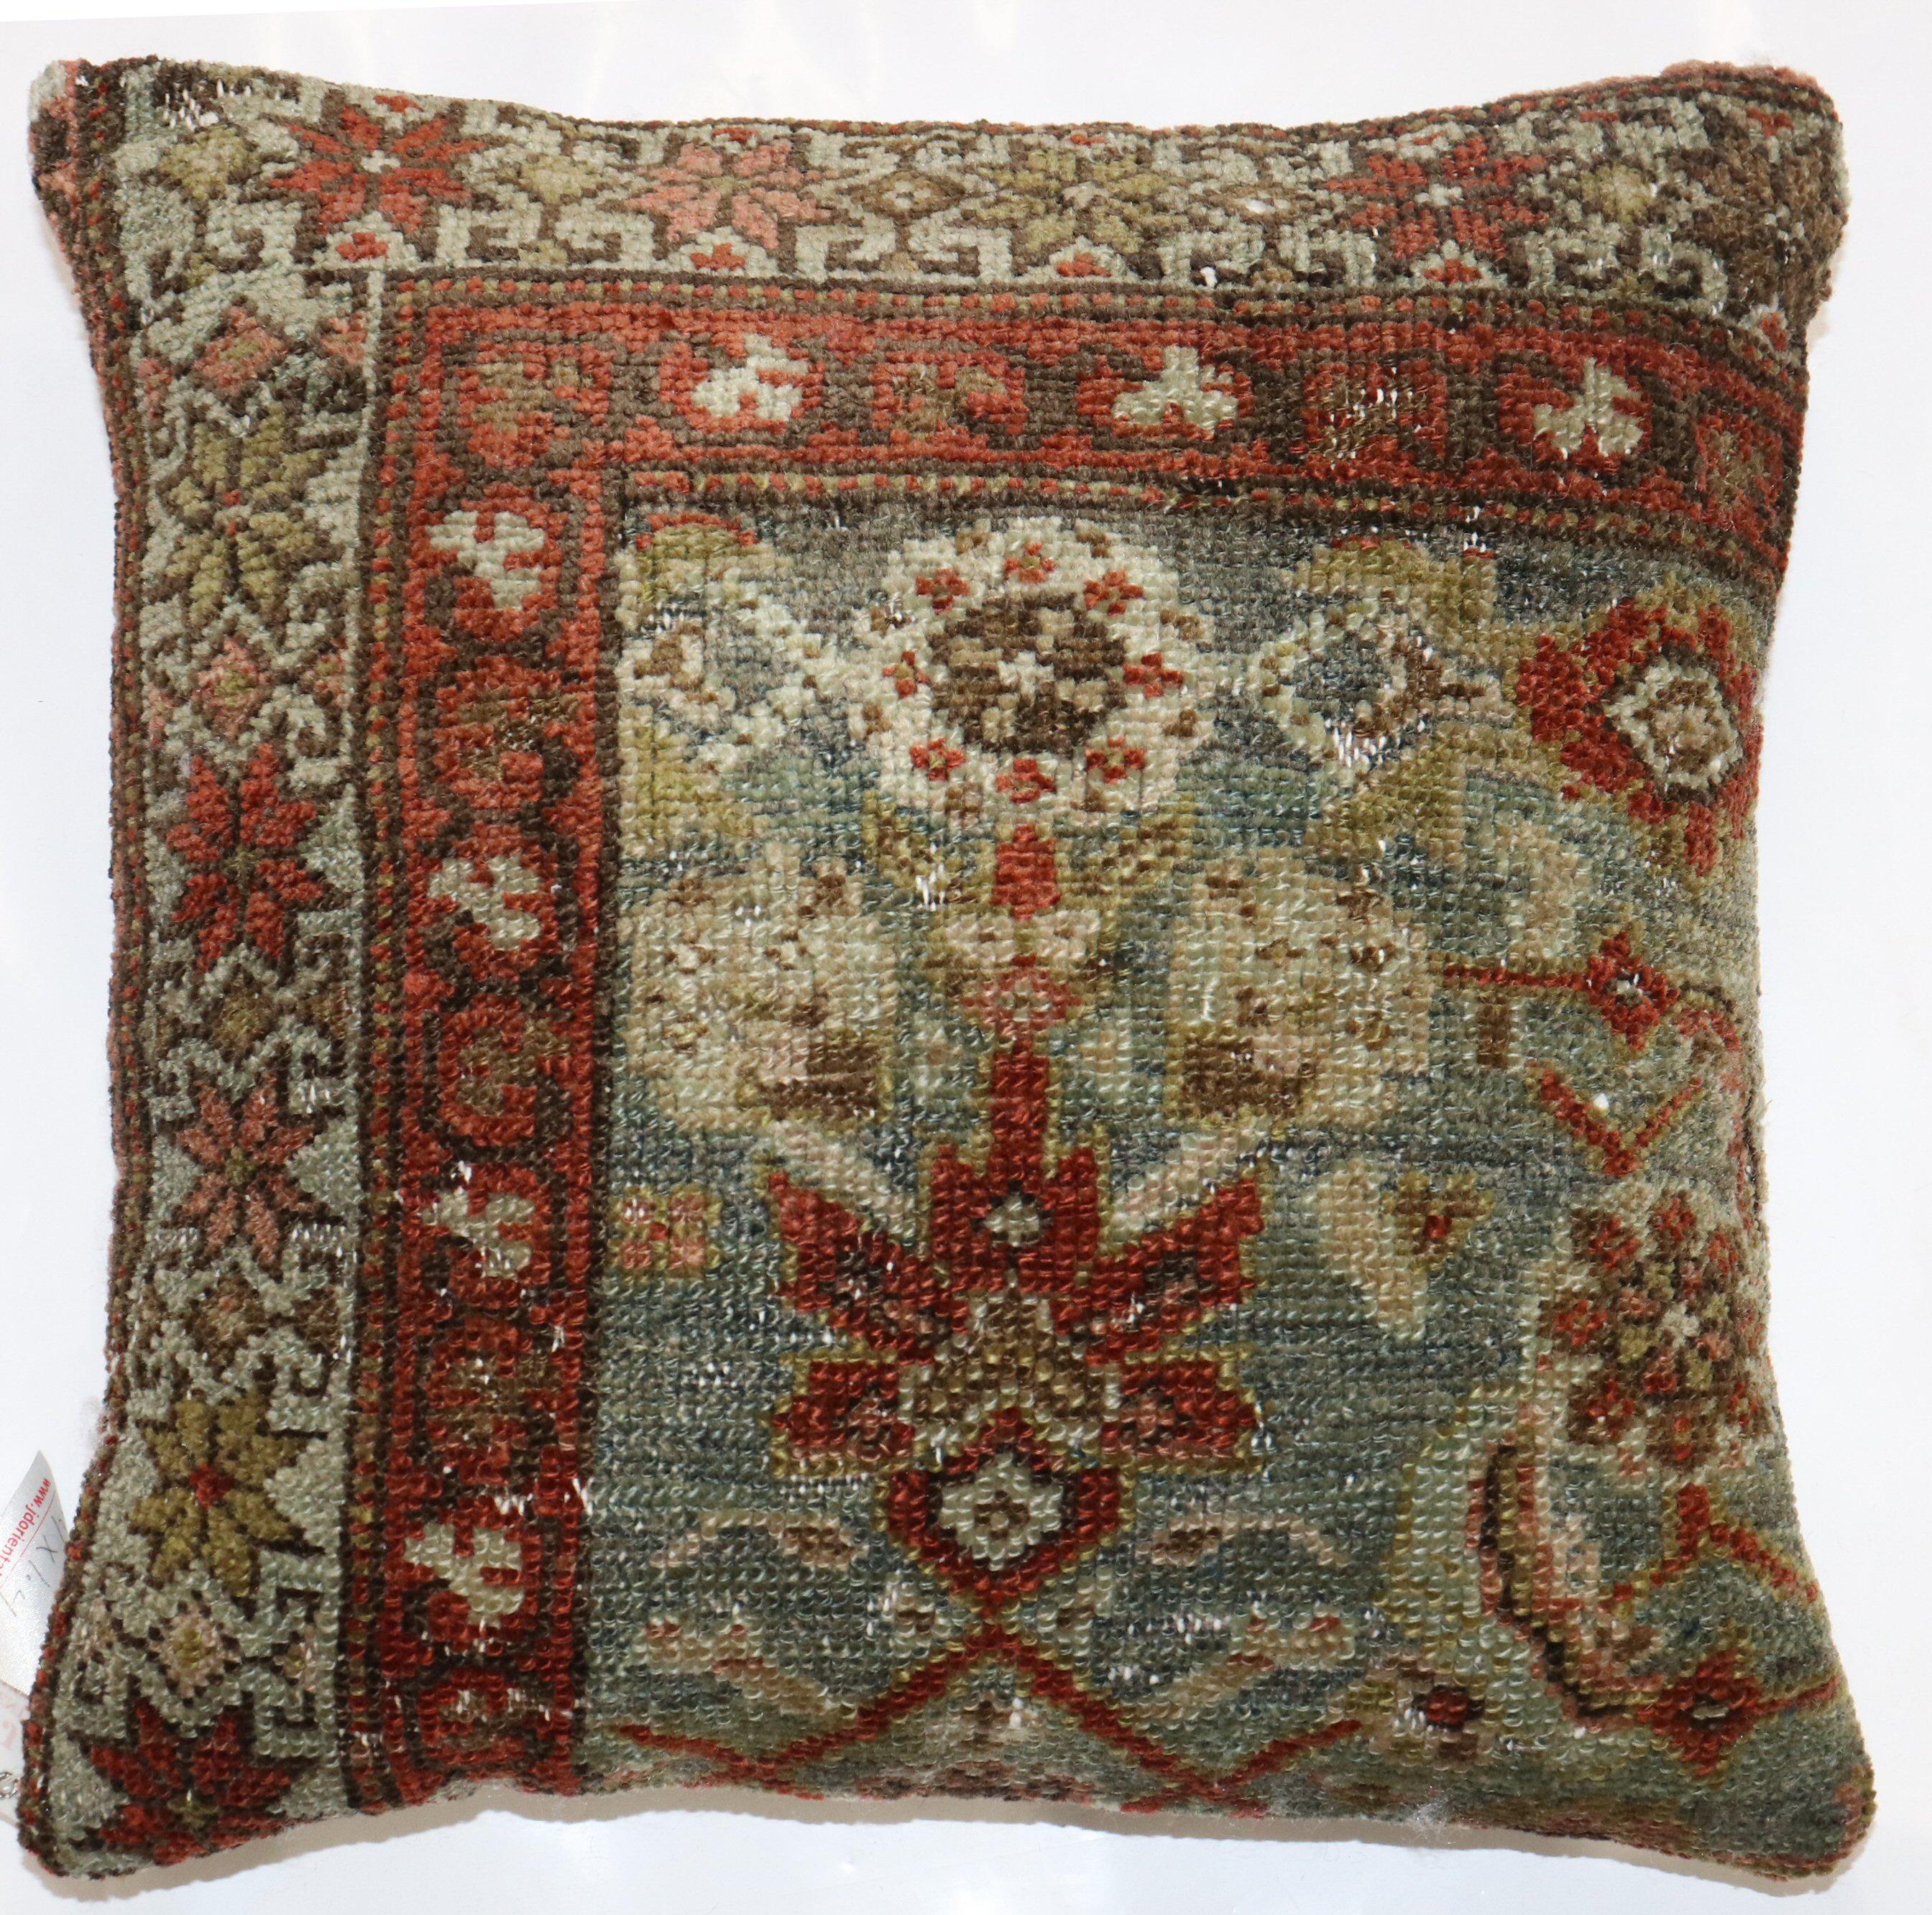 Oreiller fabriqué à partir d'un tapis persan du XXe siècle de couleur écume de mer.

Mesures : 16